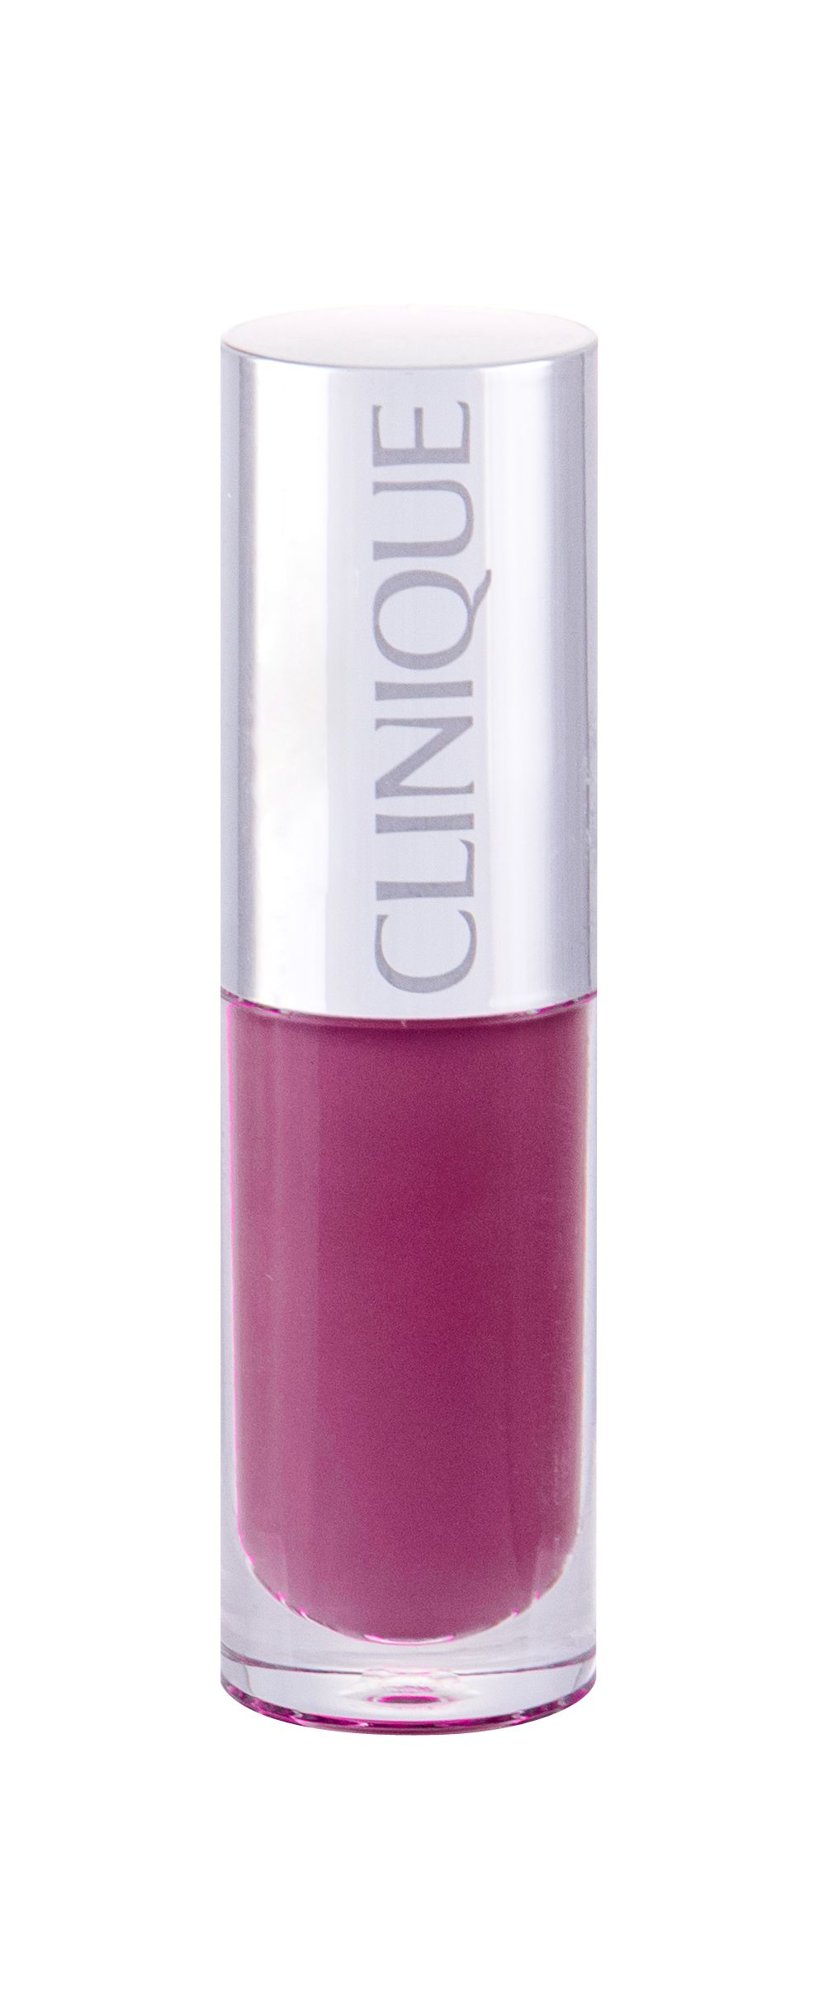 Clinique Clinique Pop Splash Lip Gloss + Hydration 4,3ml lūpų blizgesys Testeris